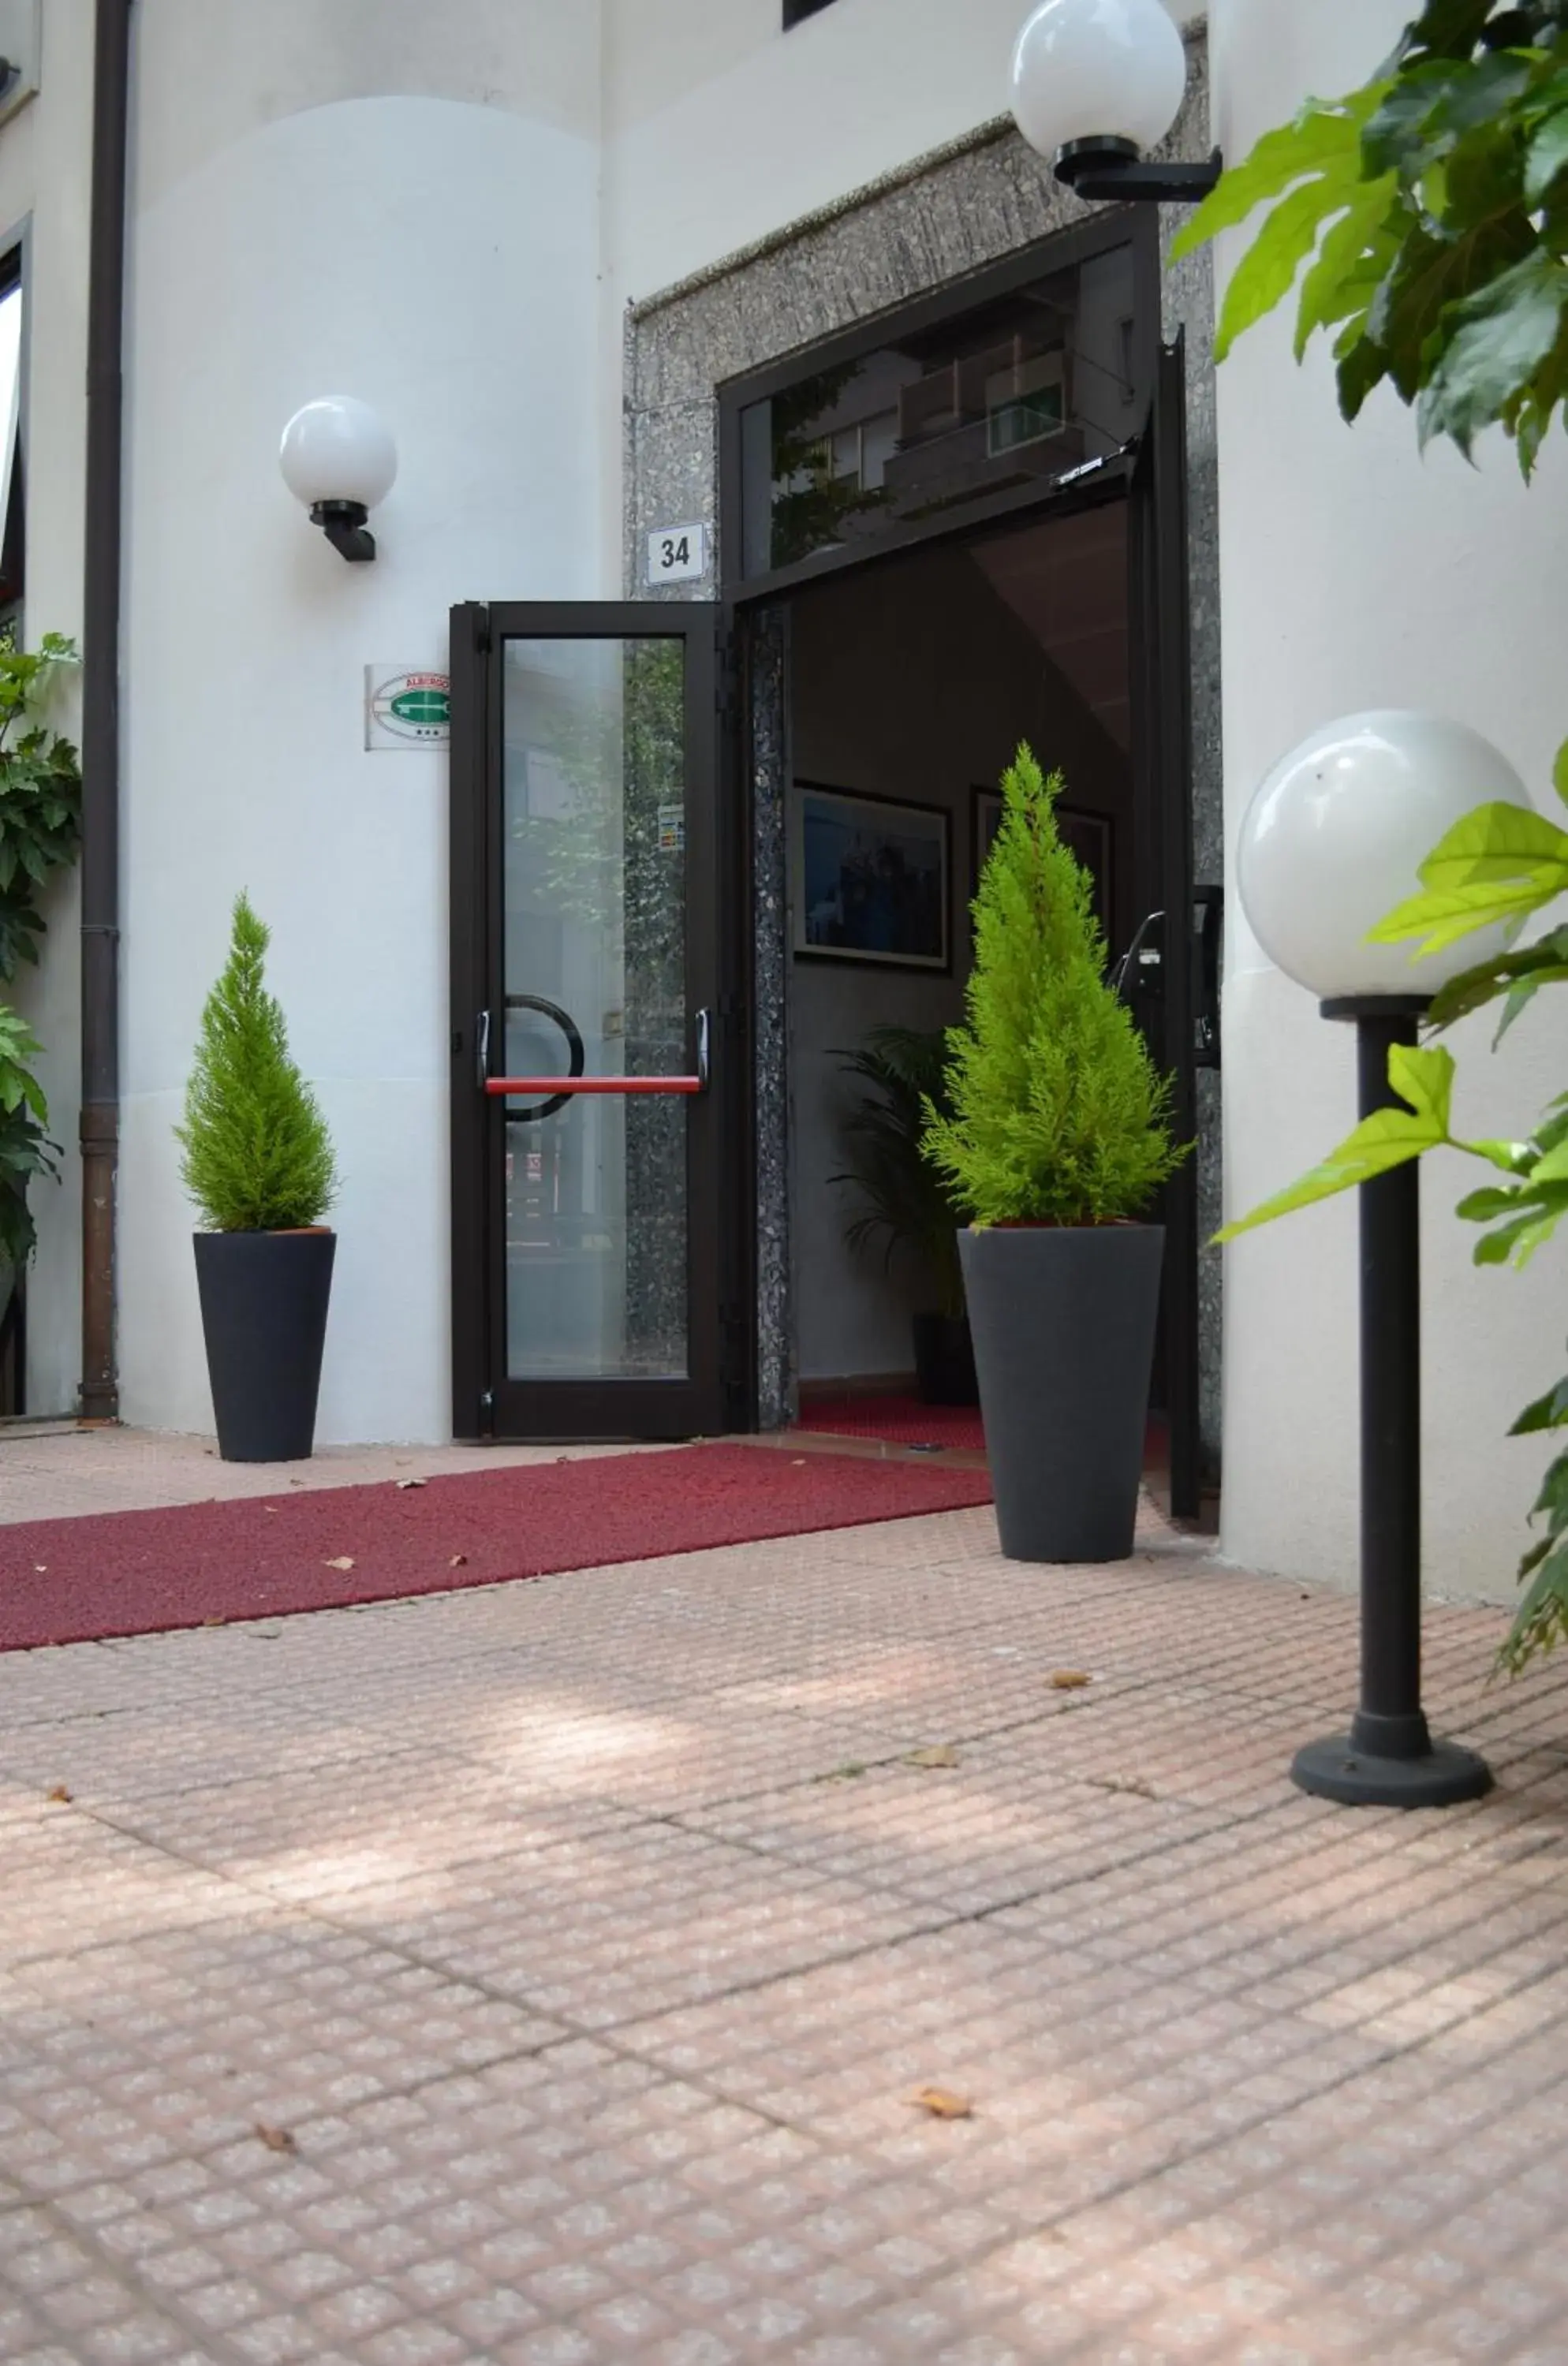 Facade/entrance in Hotel Adria